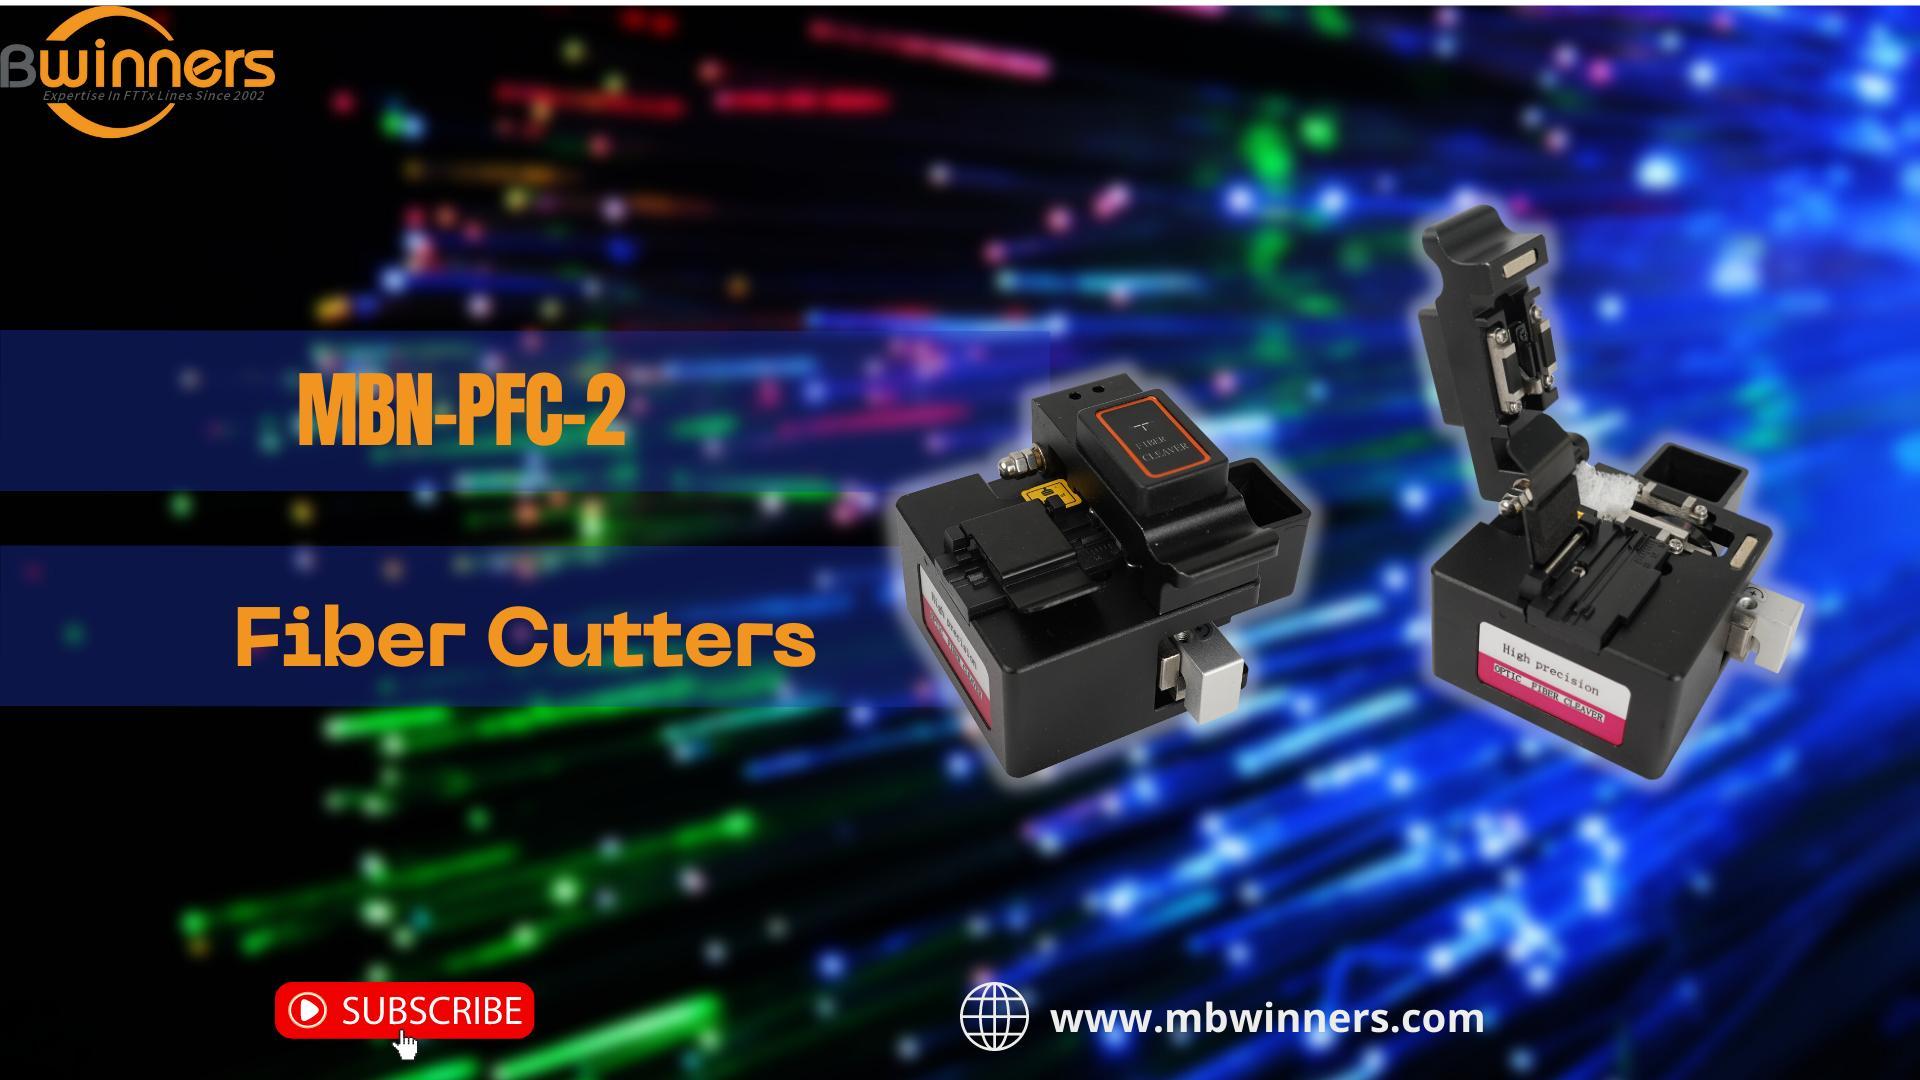 11. MBN-PFC-2 Fiber Cutters